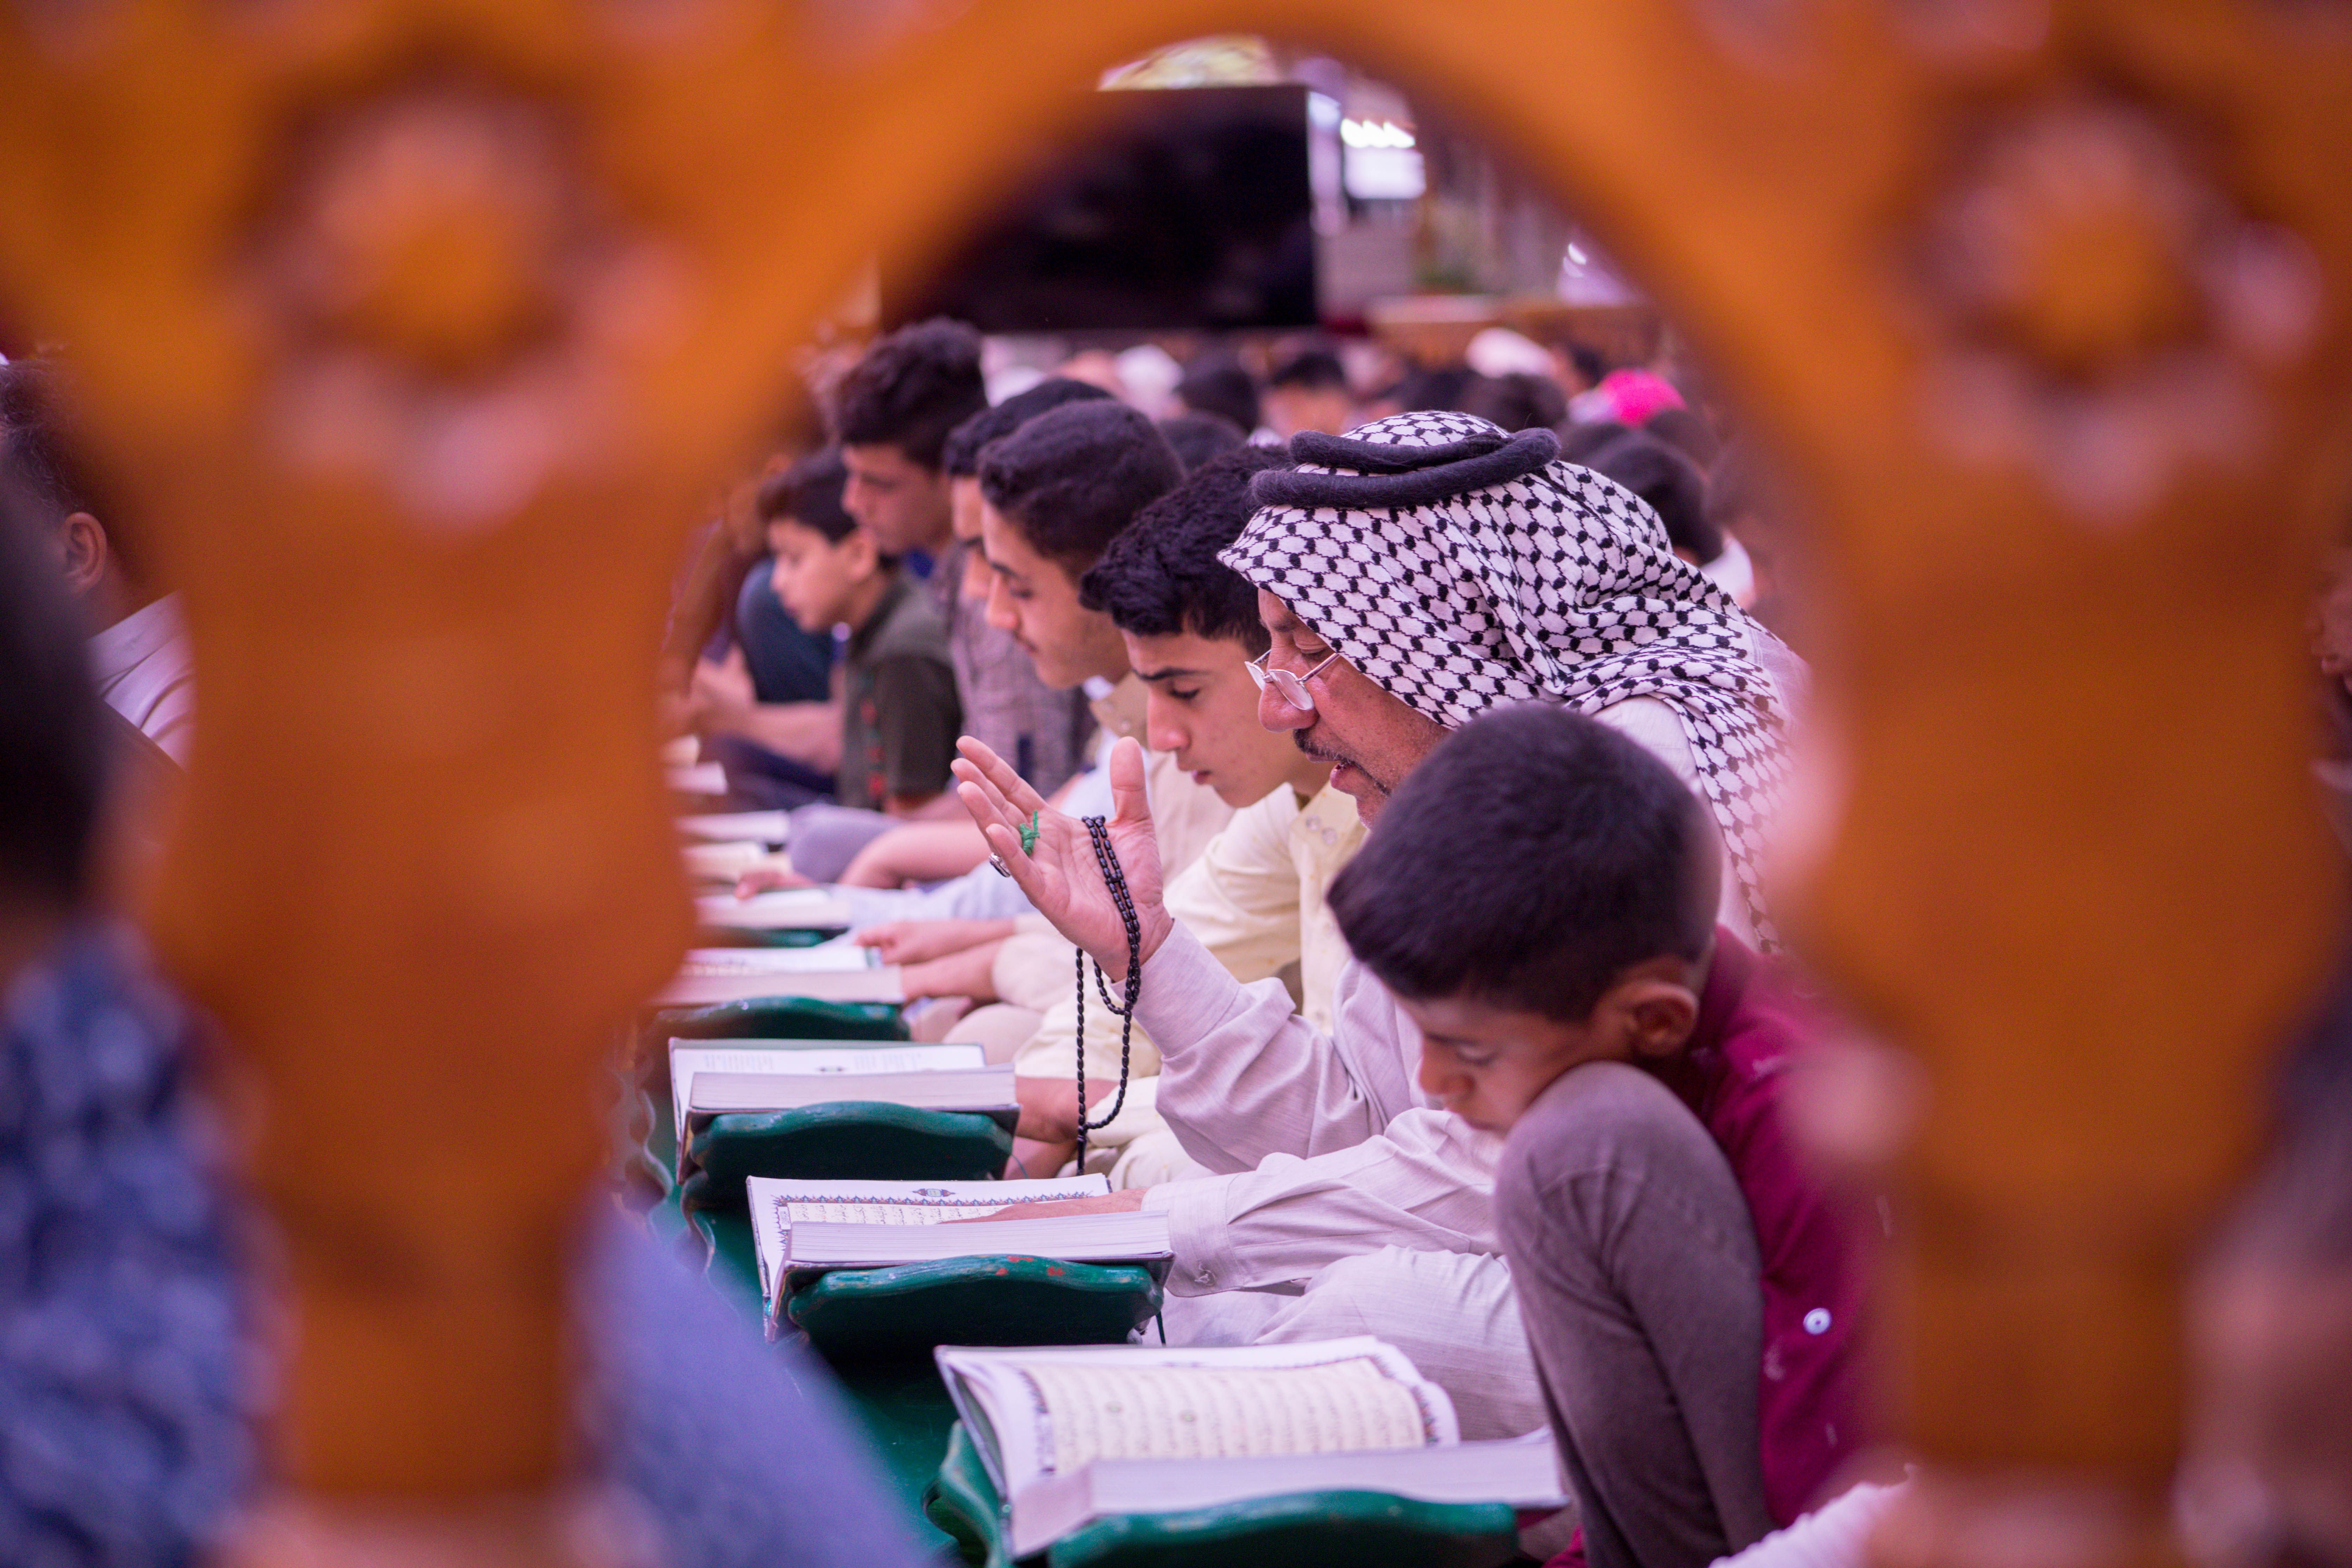 في رحاب الصحن العبّاسي المطهر معهد القرآن الكريم يقيم الختمة القرآنيّة الرمضانيّة المرتلة